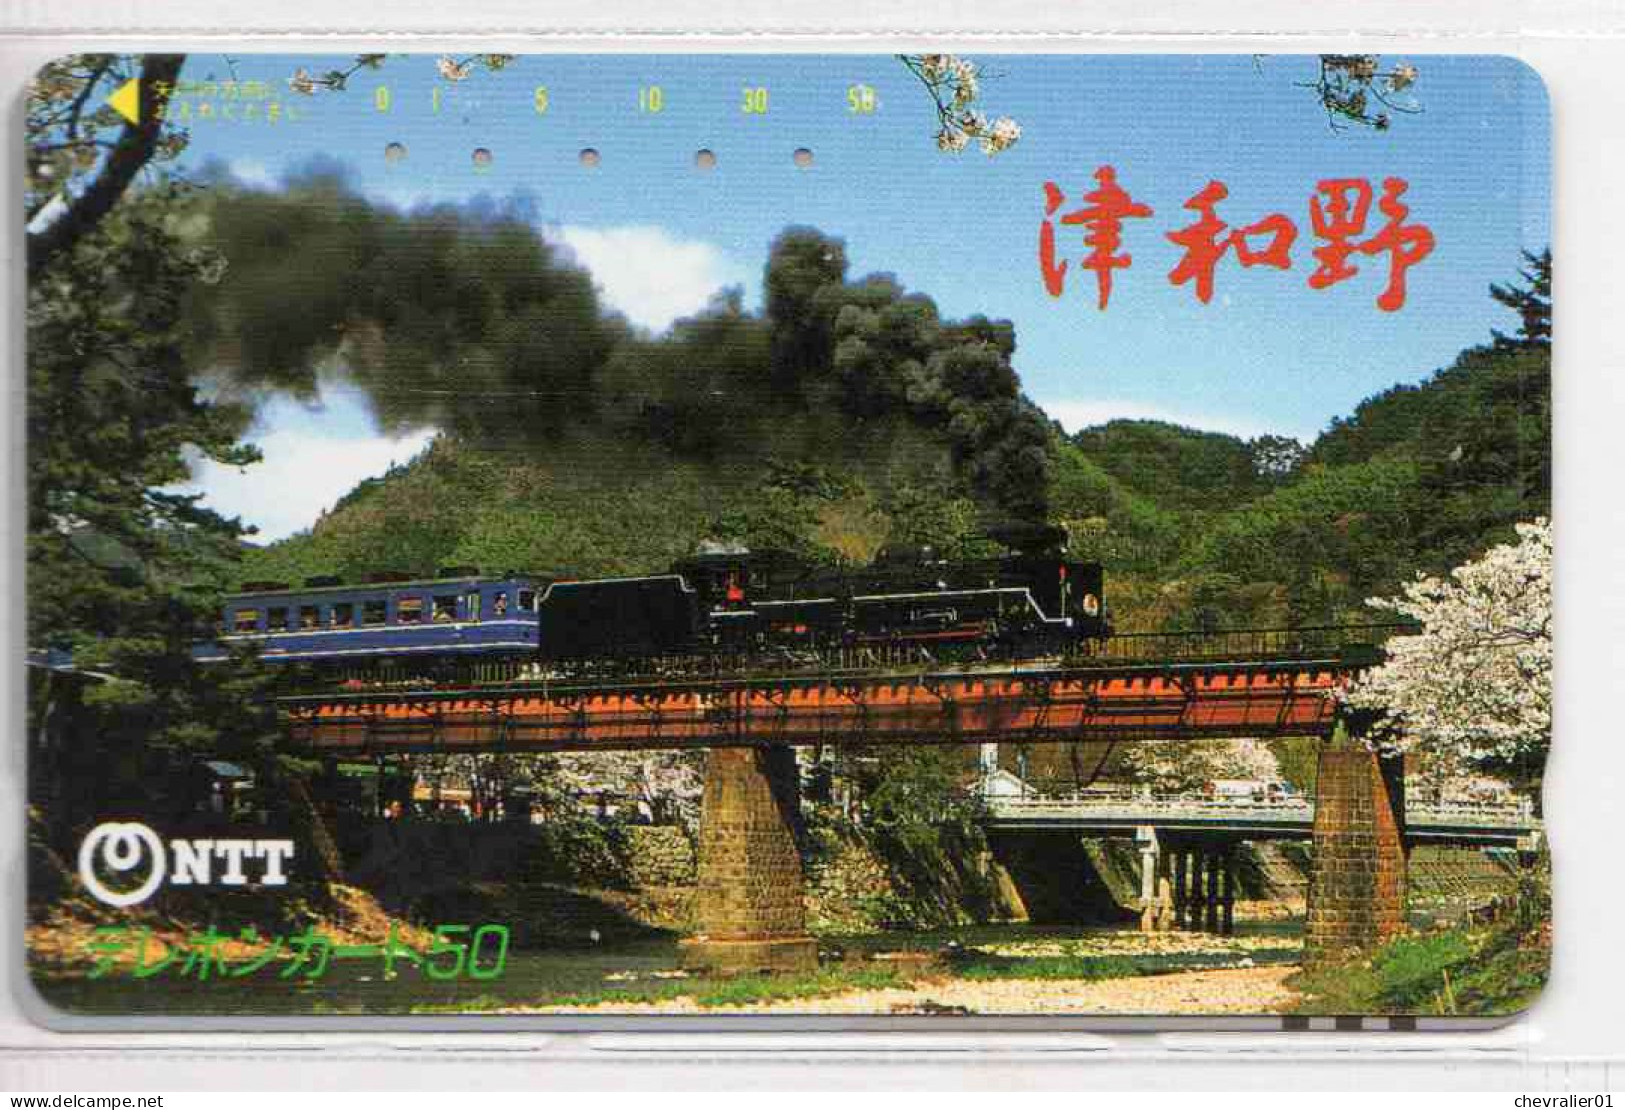 cartes de téléphone-Télécartes_japon_10 cartes_trains-avion-baleine-cheval-chien